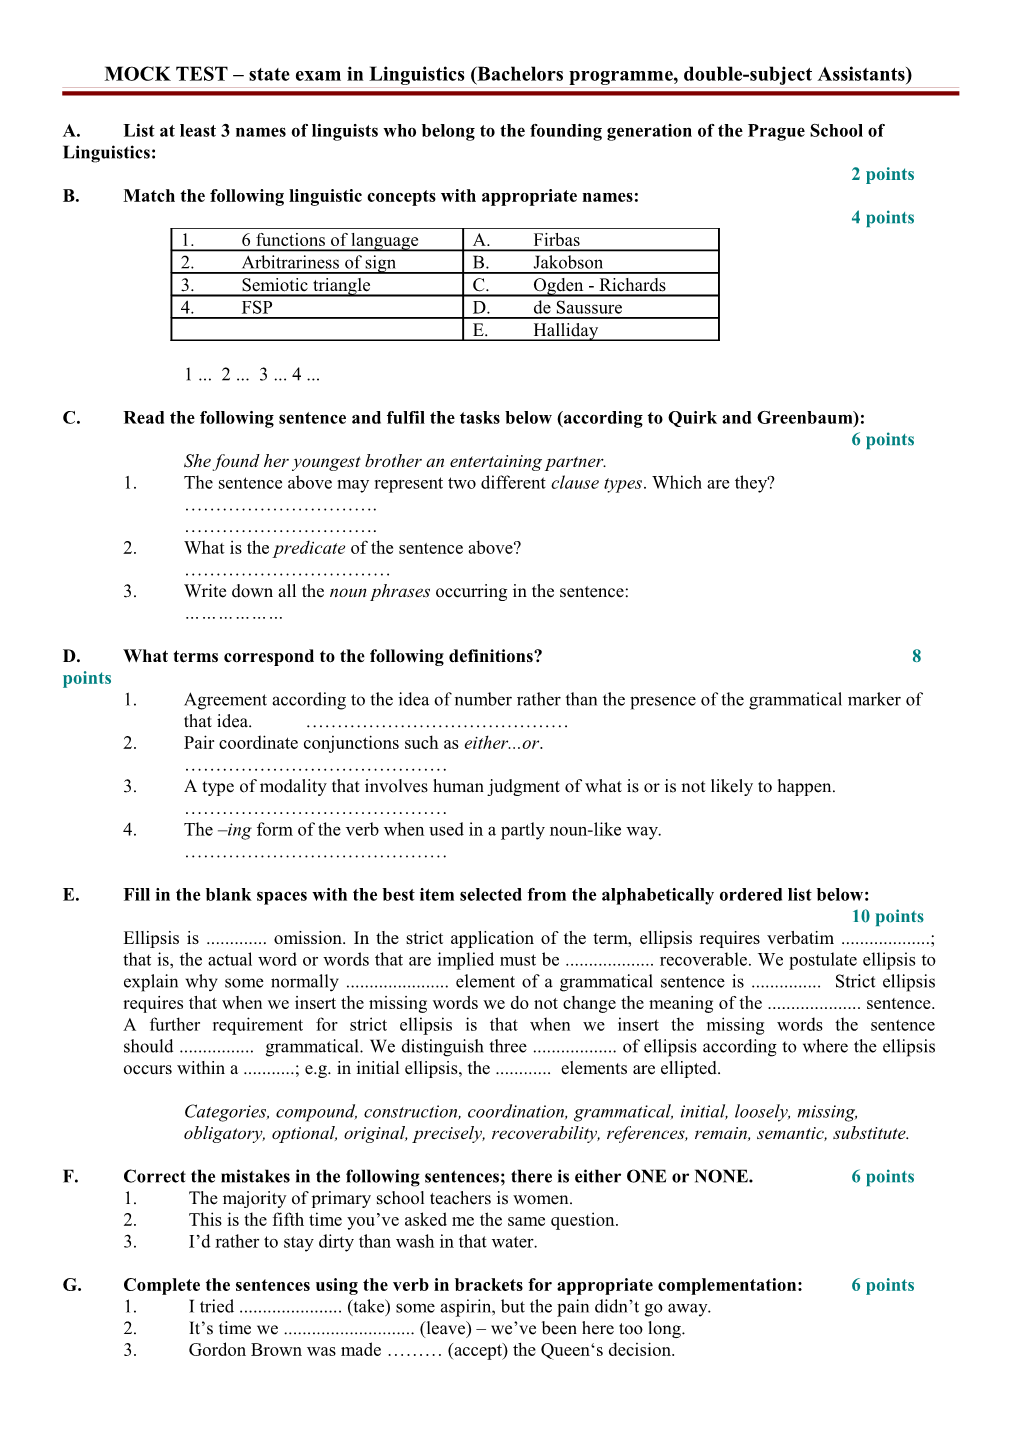 MOCK TEST Bc State Exam in Linguistics Autumn 2007